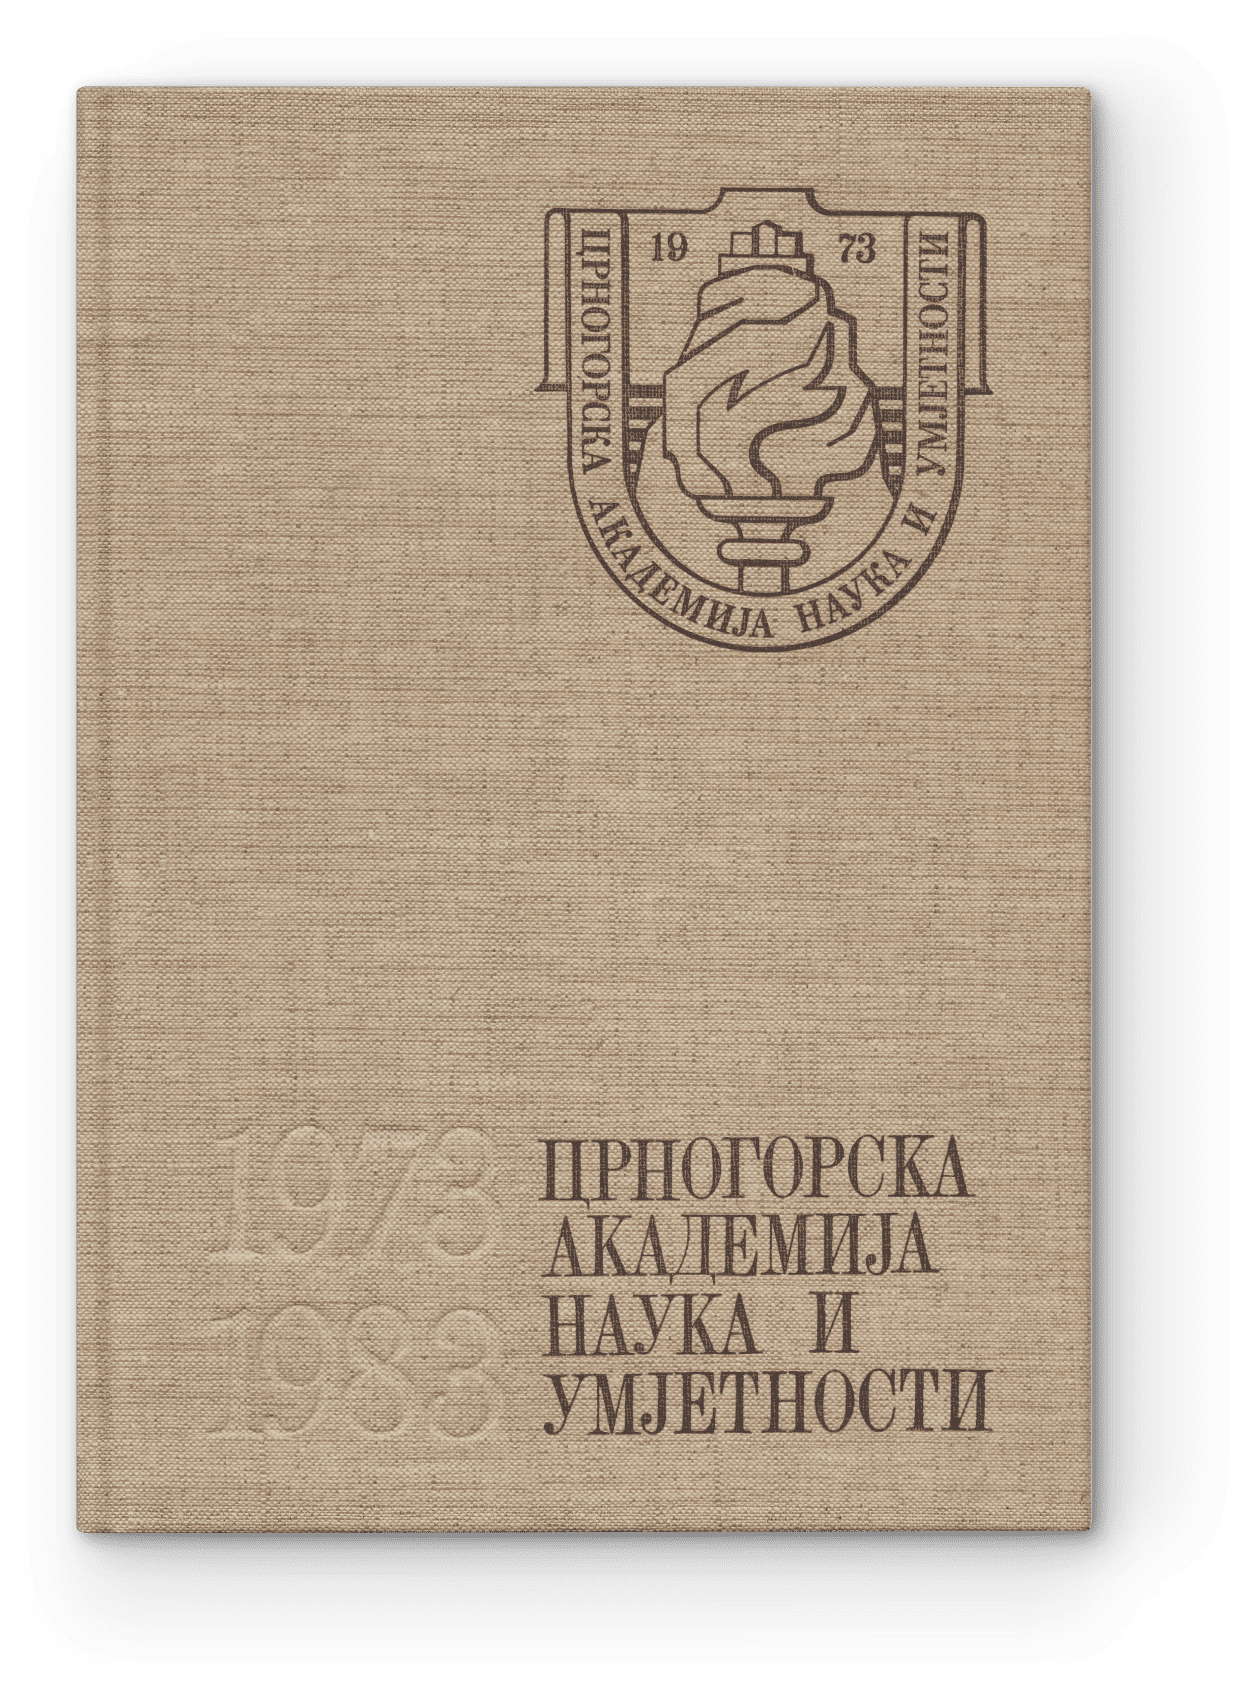 Crnogorska akademija nauka i umjetnosti 1973-1983